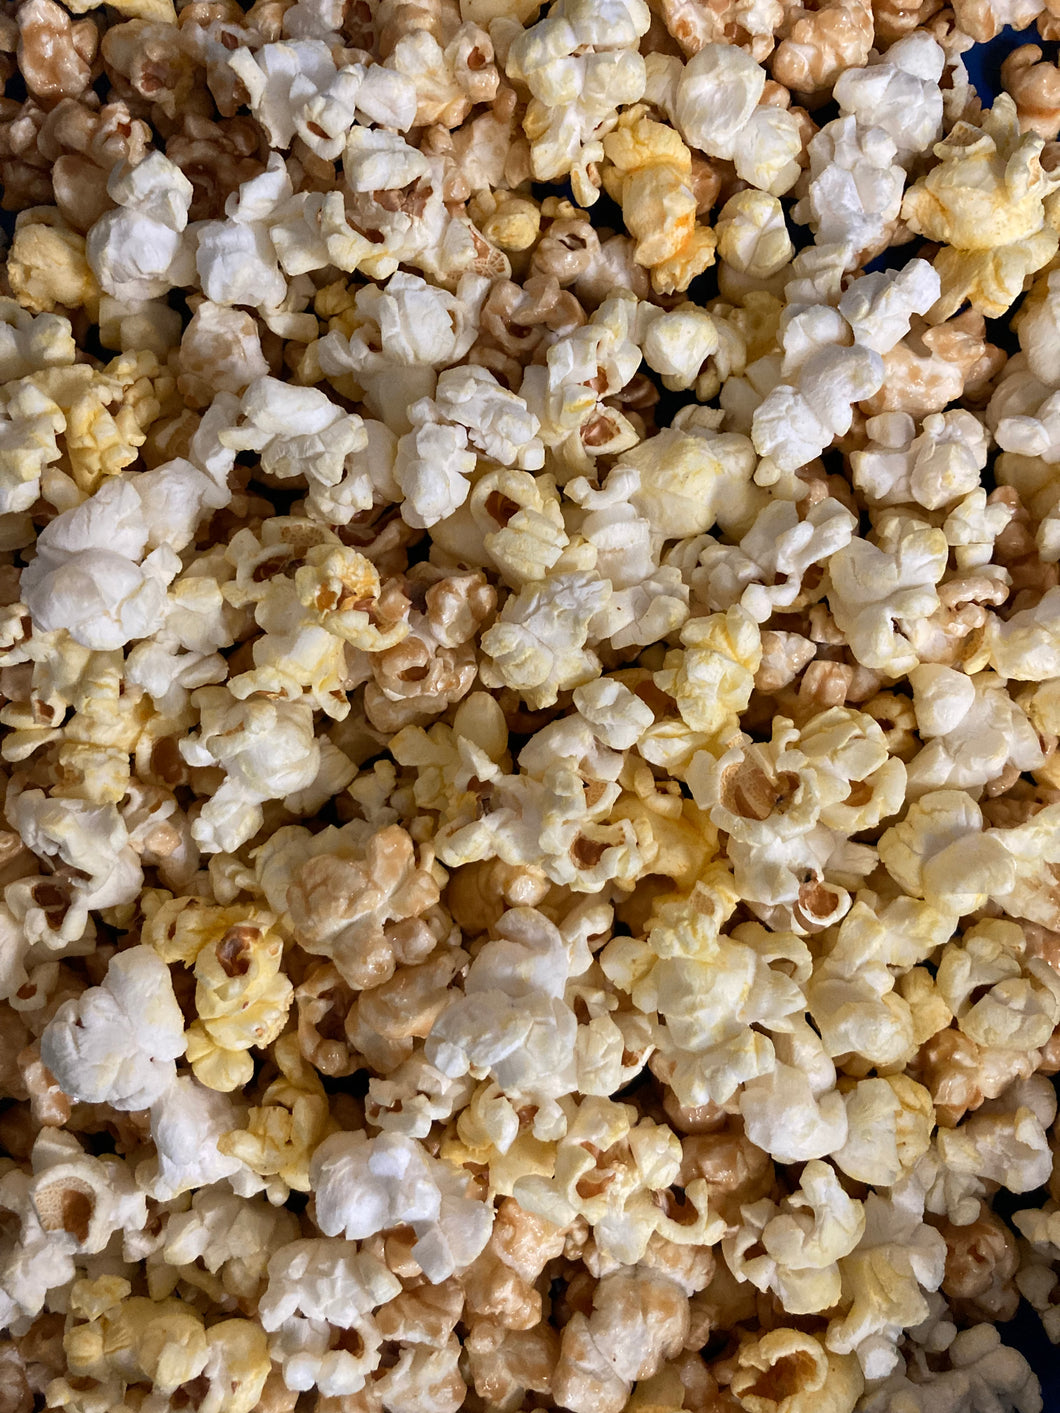 Gourmet Popcorn Keller Mix (Caramel & Butter) Resealable Bag